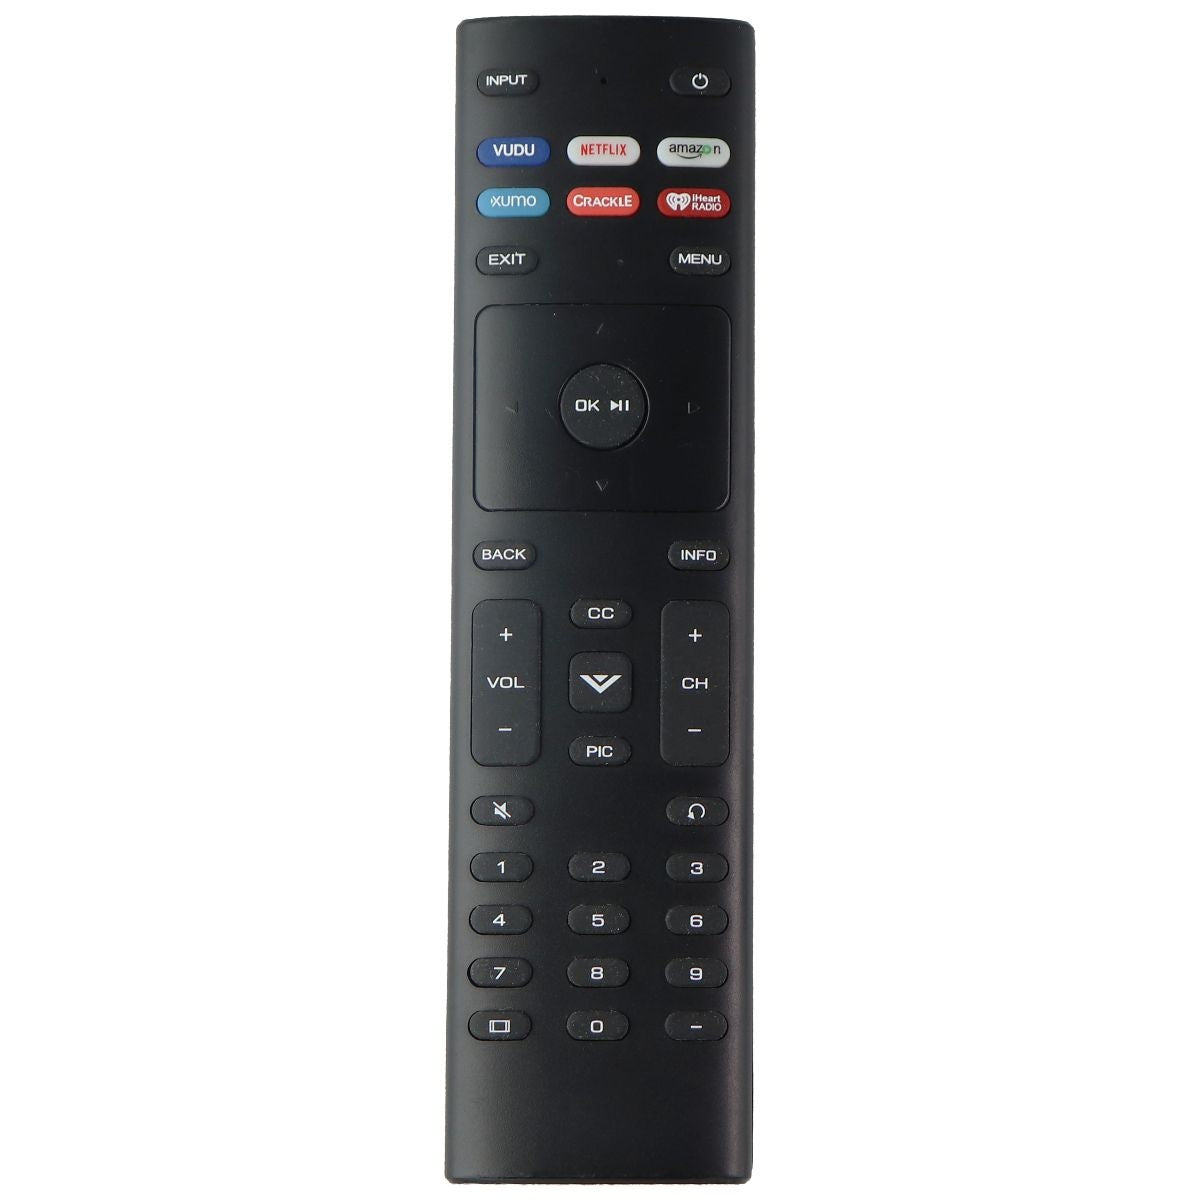 Vizio Remote Control for Select Vizio TV Systems Netflix/Vudu/Amazon - Black TV, Video & Audio Accessories - Remote Controls Vizio    - Simple Cell Bulk Wholesale Pricing - USA Seller